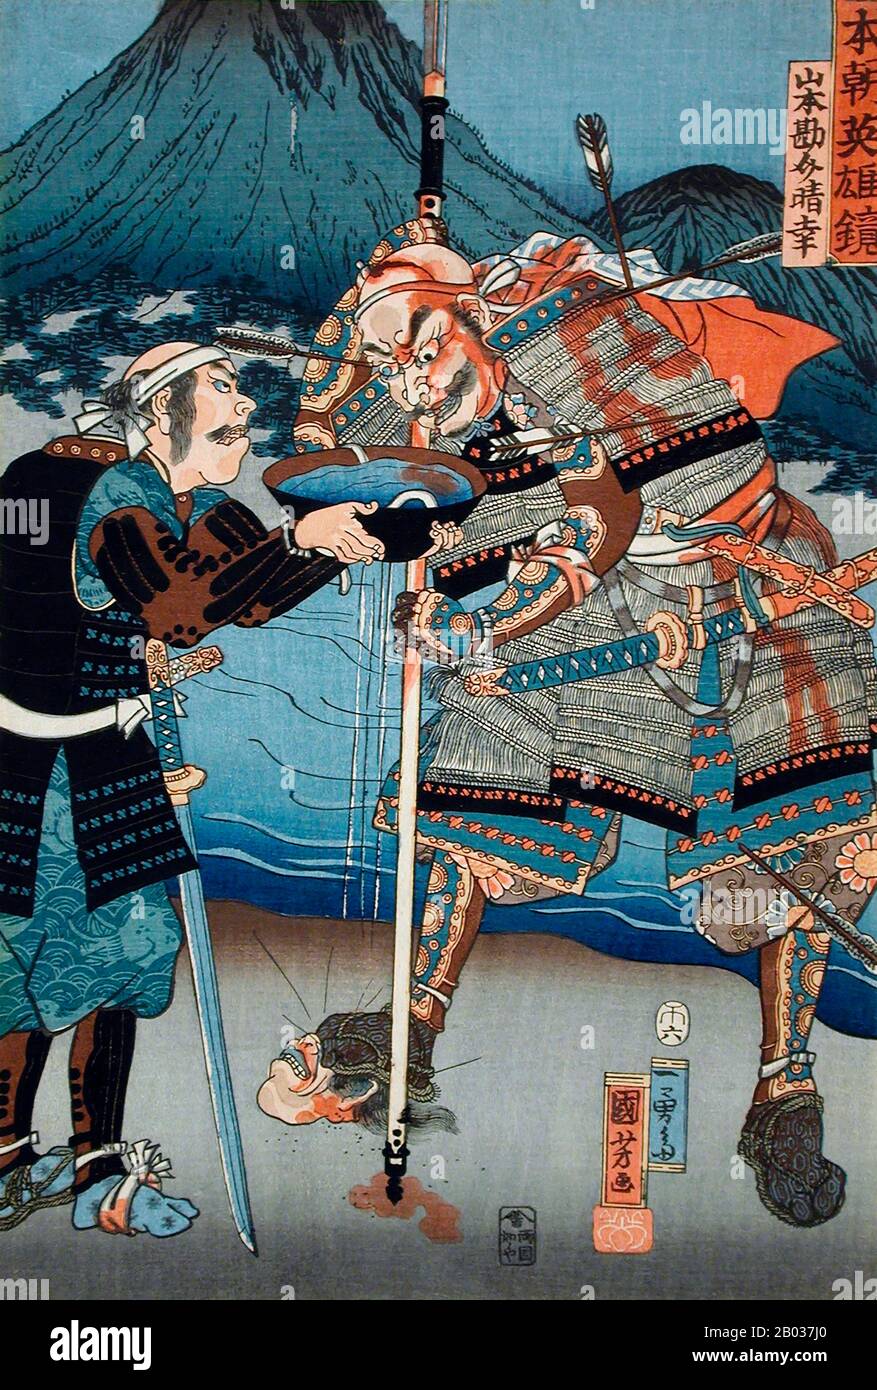 Utagawa Kuniyoshi (1er janvier 1798 - 14 avril 1861) était l'un des derniers grands maîtres du style japonais ukiyo-e de l'impression et de la peinture de blocs de bois. Il est associé à l'école Utagawa. La gamme des sujets préférés de Kuniyoshi comprenait de nombreux genres : paysages, belles femmes, acteurs Kabuki, chats et animaux mythiques. Il est connu pour les représentations des batailles de samouraï et des héros légendaires. Ses œuvres d'art ont été affectées par les influences occidentales dans la peinture et la caricature des paysages. Banque D'Images